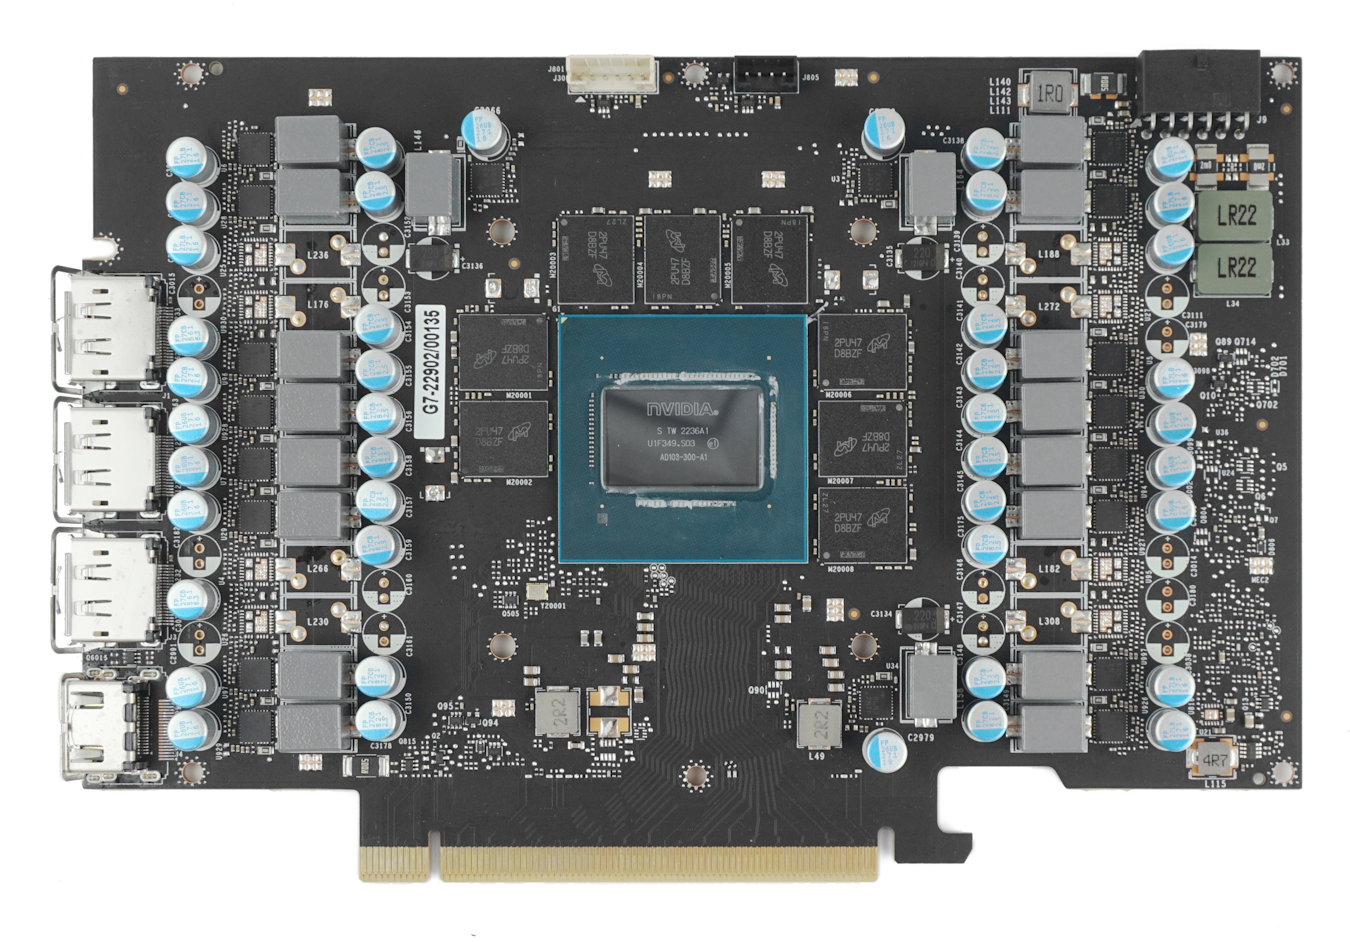 GALAX GeForce RTX 4080 16GB SG